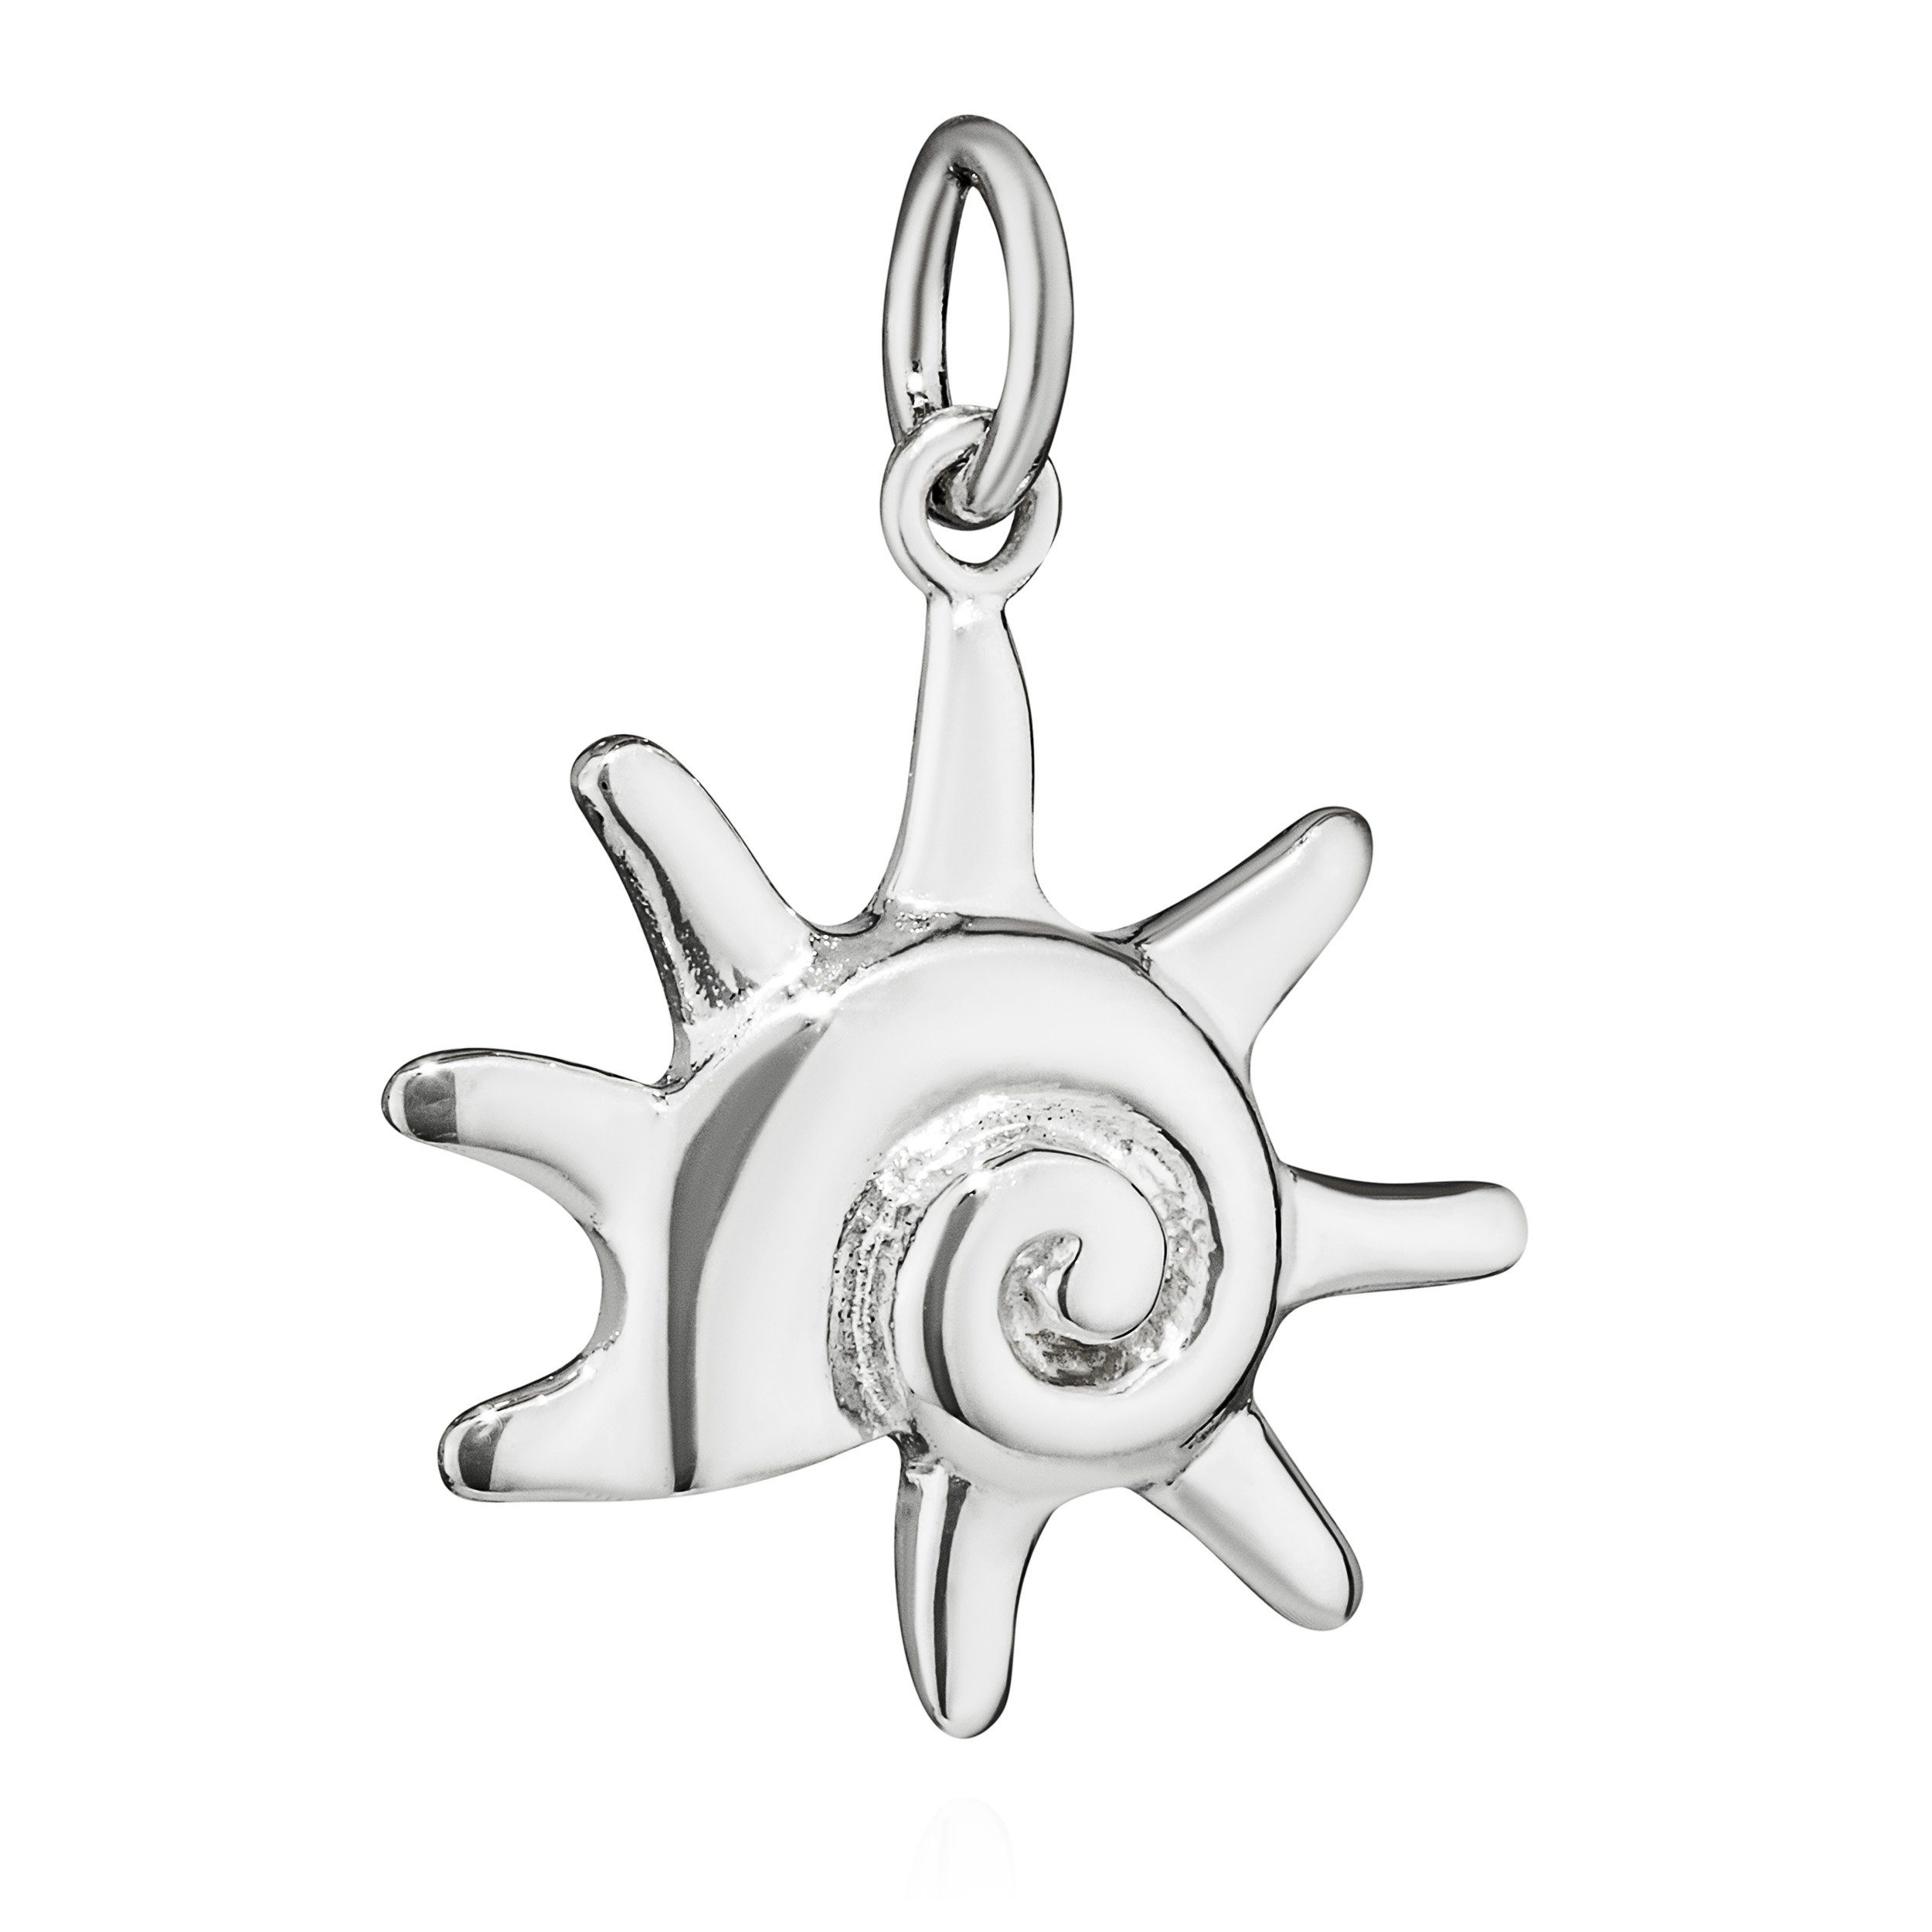 925 NKlaus Sonnenspirale Silber Kettenanhänger Kettenanhänger Kettencharm-Anhänge 2x2cm groß